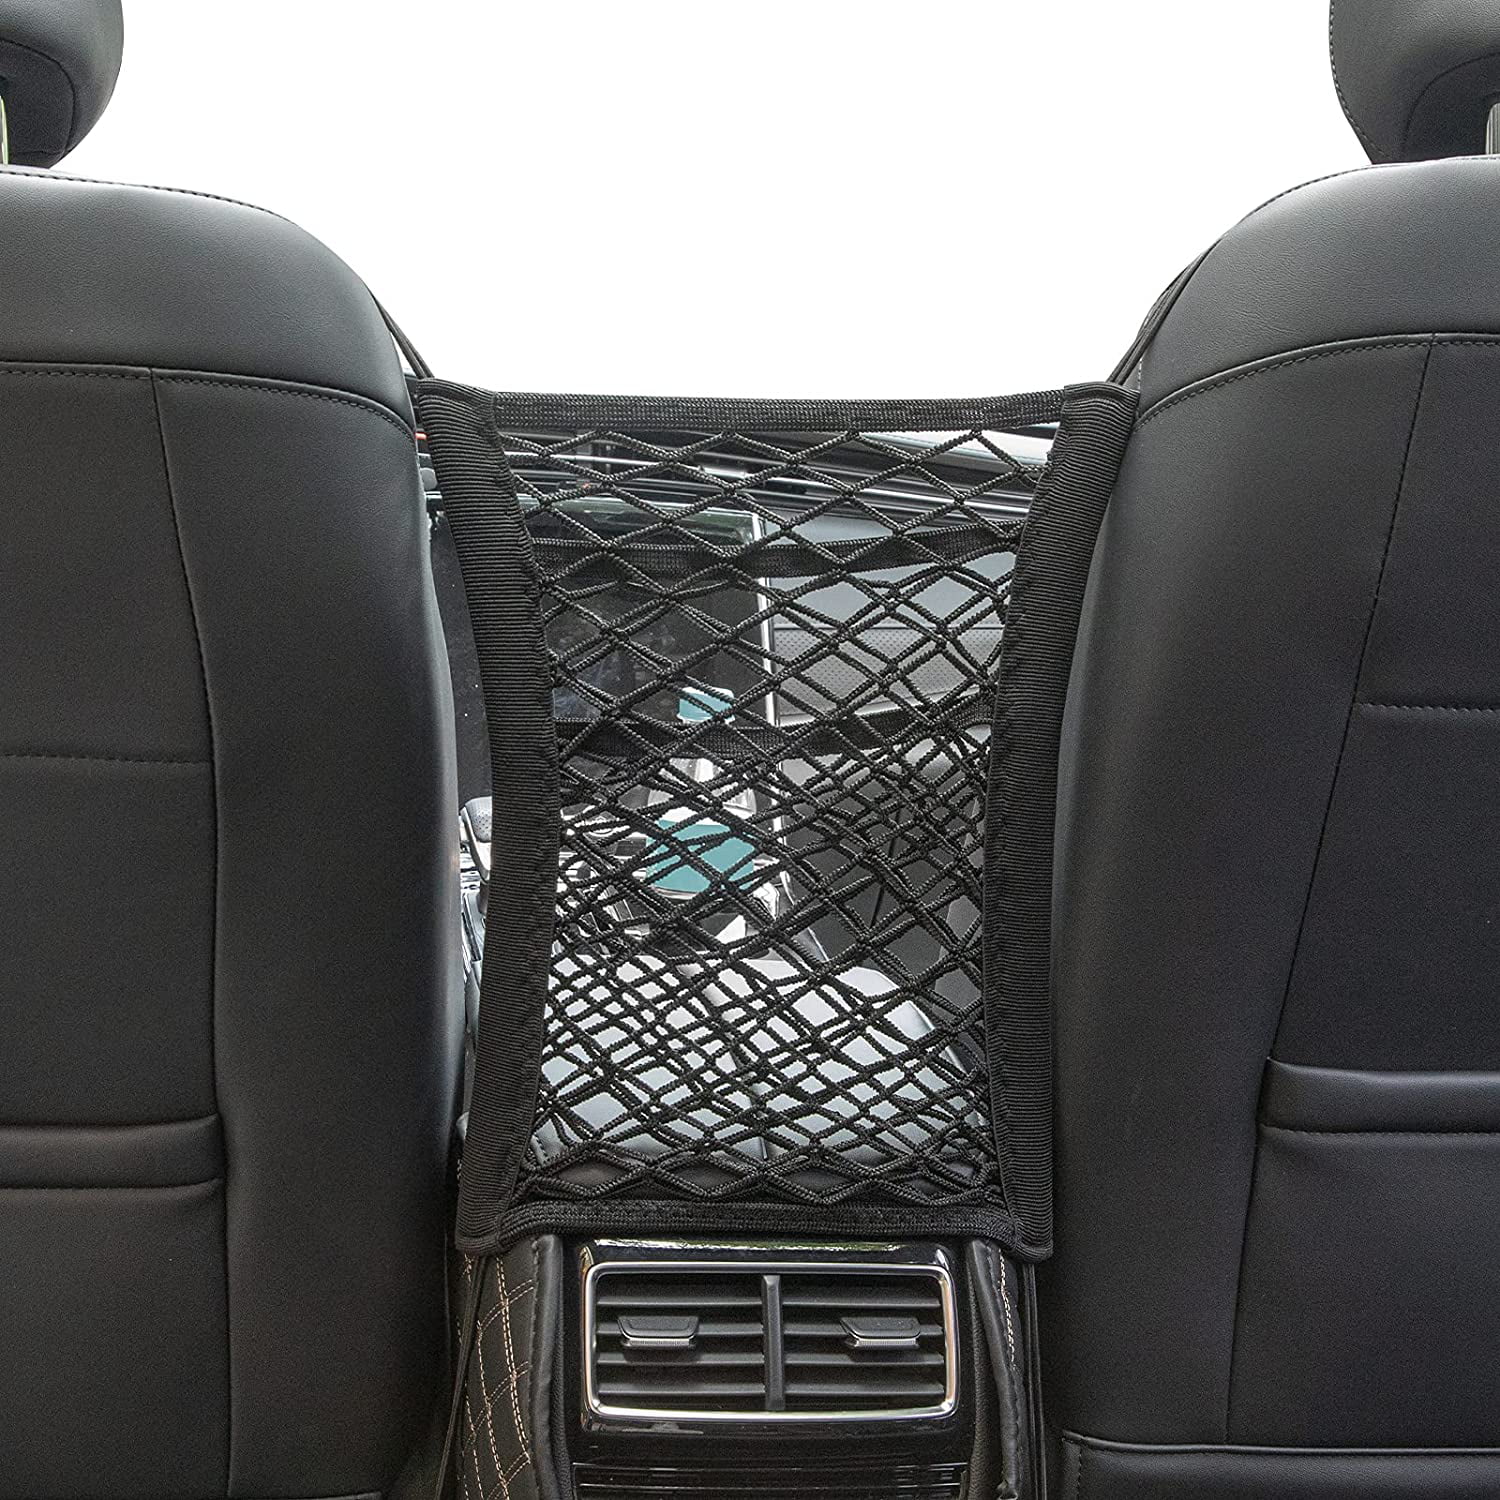 2021,Upgraded Black Car Net Pocket Handbag Holder,Car Purse Holder Between Seats,Purse Holder for Car,Car Net Pocket for Purses and Bags Front Seat Barrier of Backseat Pet Kids 